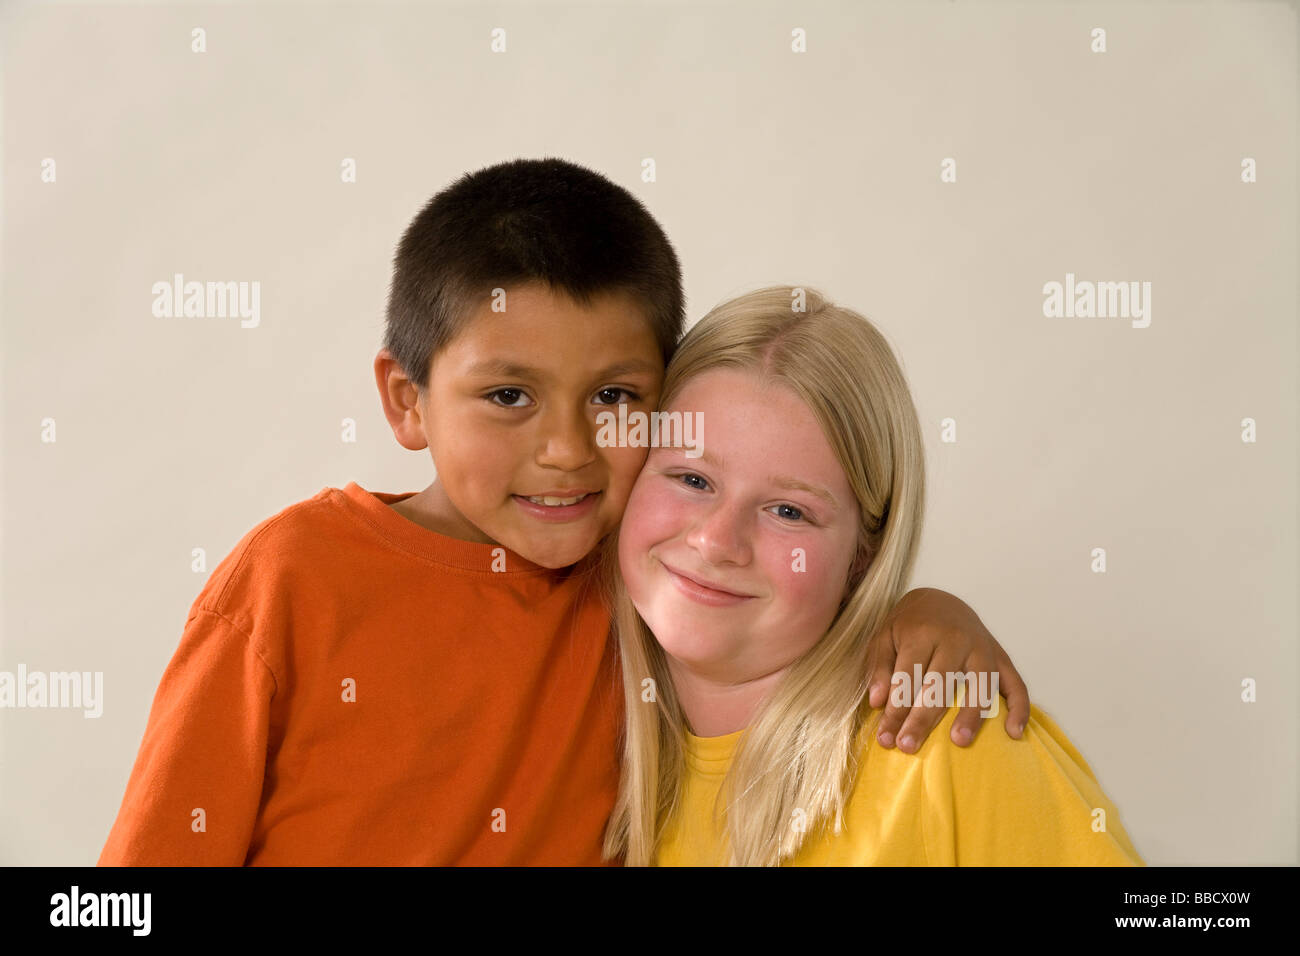 Porträt des jungen Mädchens 11-12 Jahre alt mit angenommenen Hispanic jüngeren Bruder 8-9 jährigen uns USA USA Amerika POV Herr © Myrleen Pearson Stockfoto